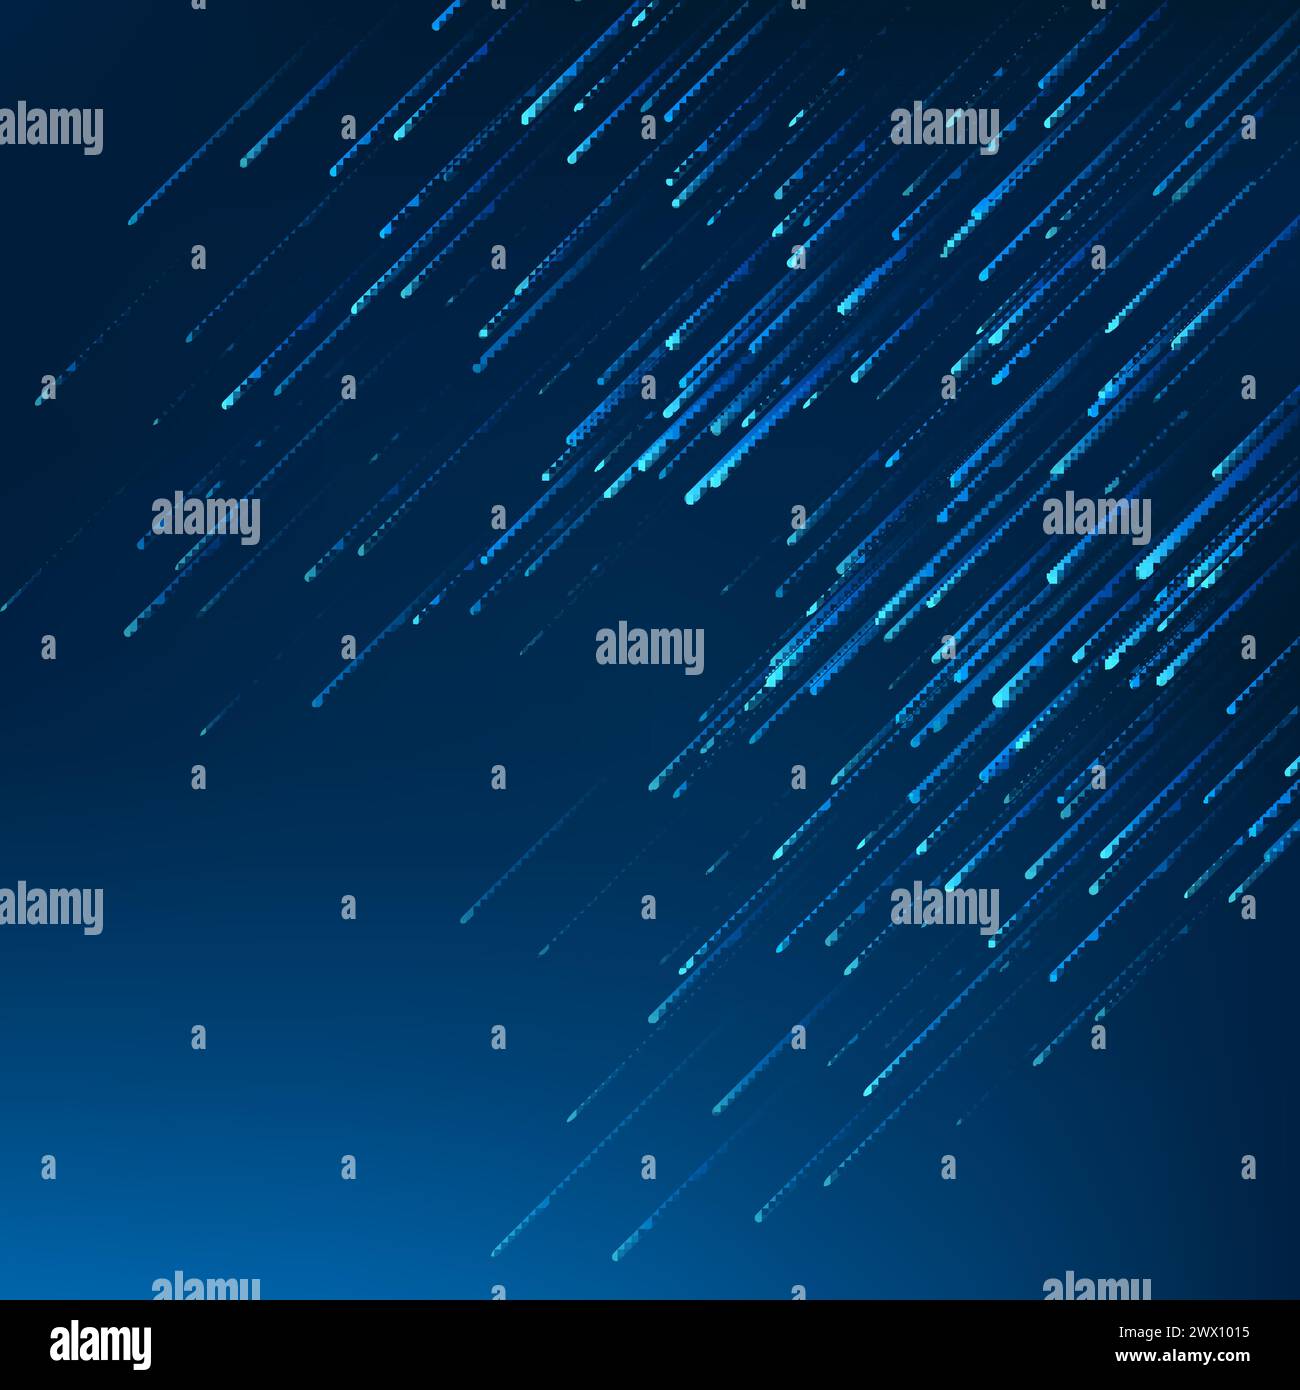 Linee blu cadute su sfondo blu scuro, illustrazione vettoriale Illustrazione Vettoriale